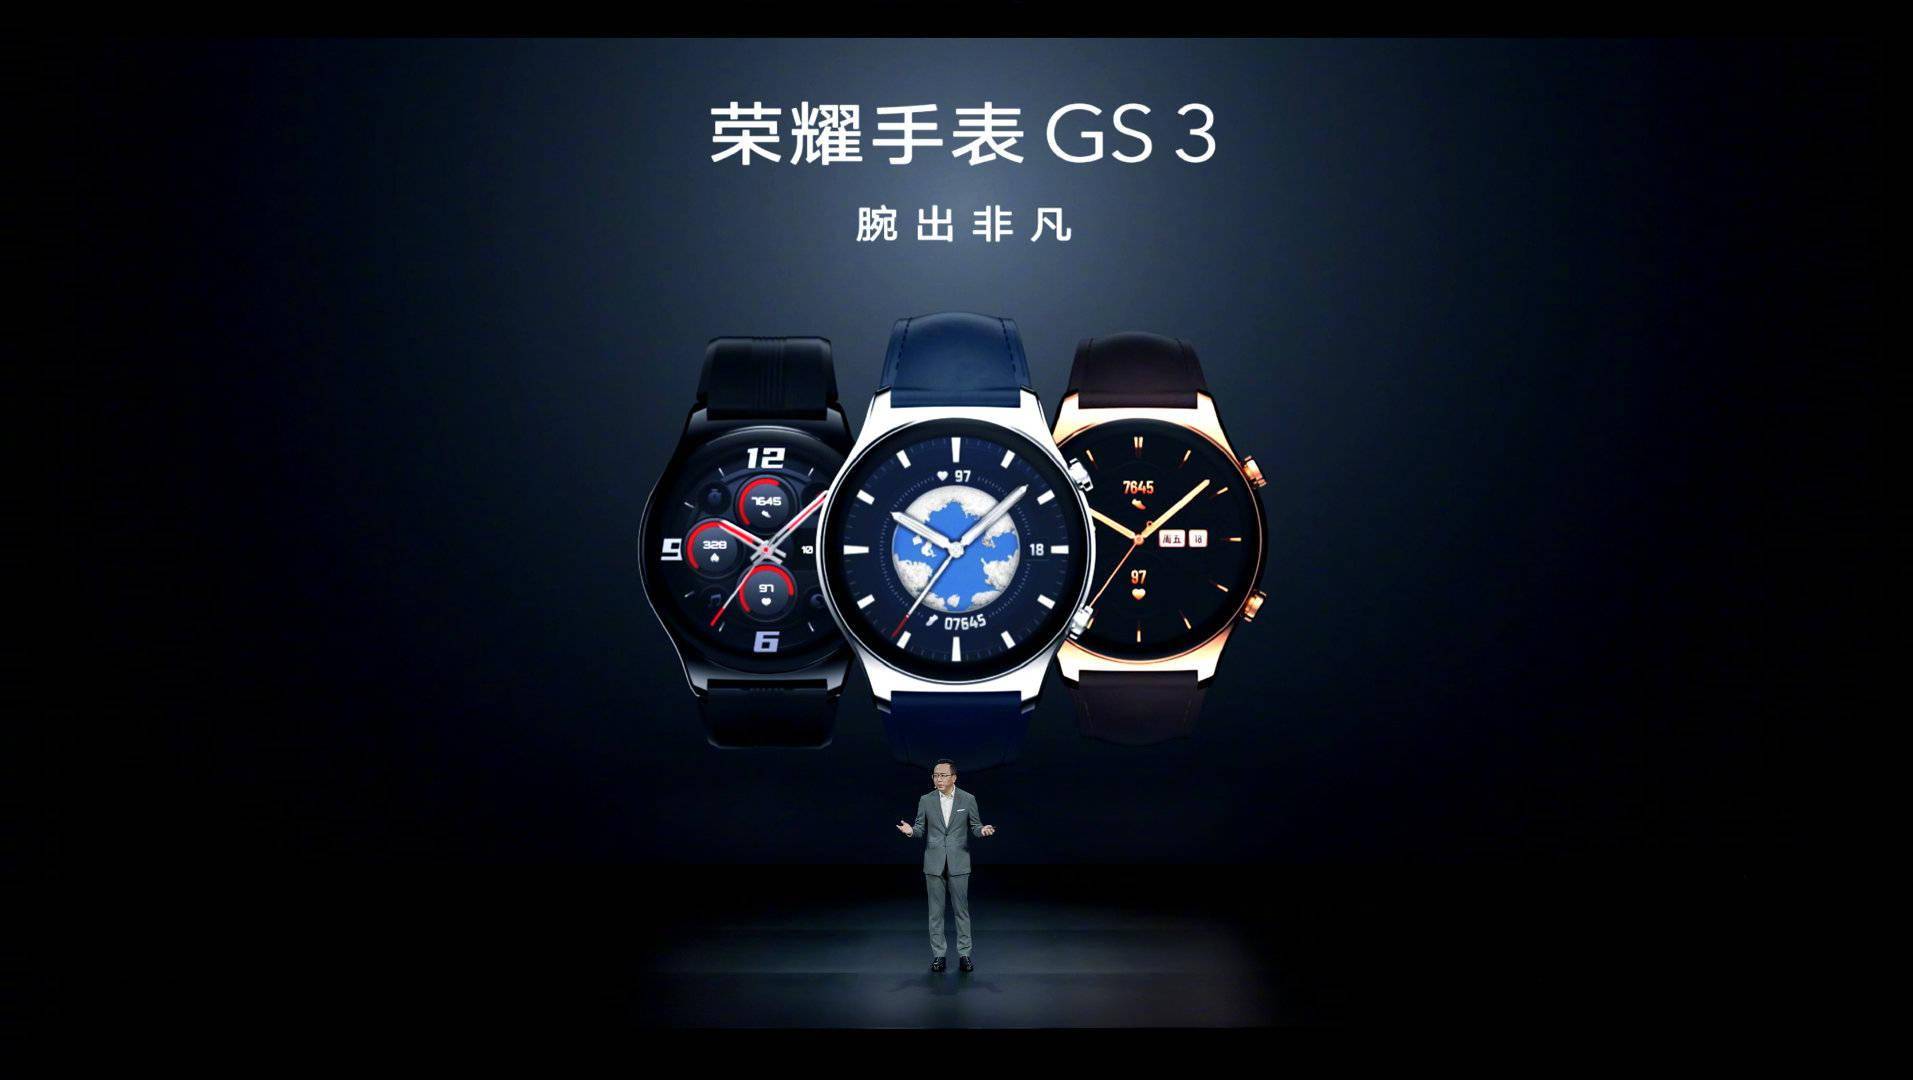 1299元起荣耀首款高端智能手表gs3发布